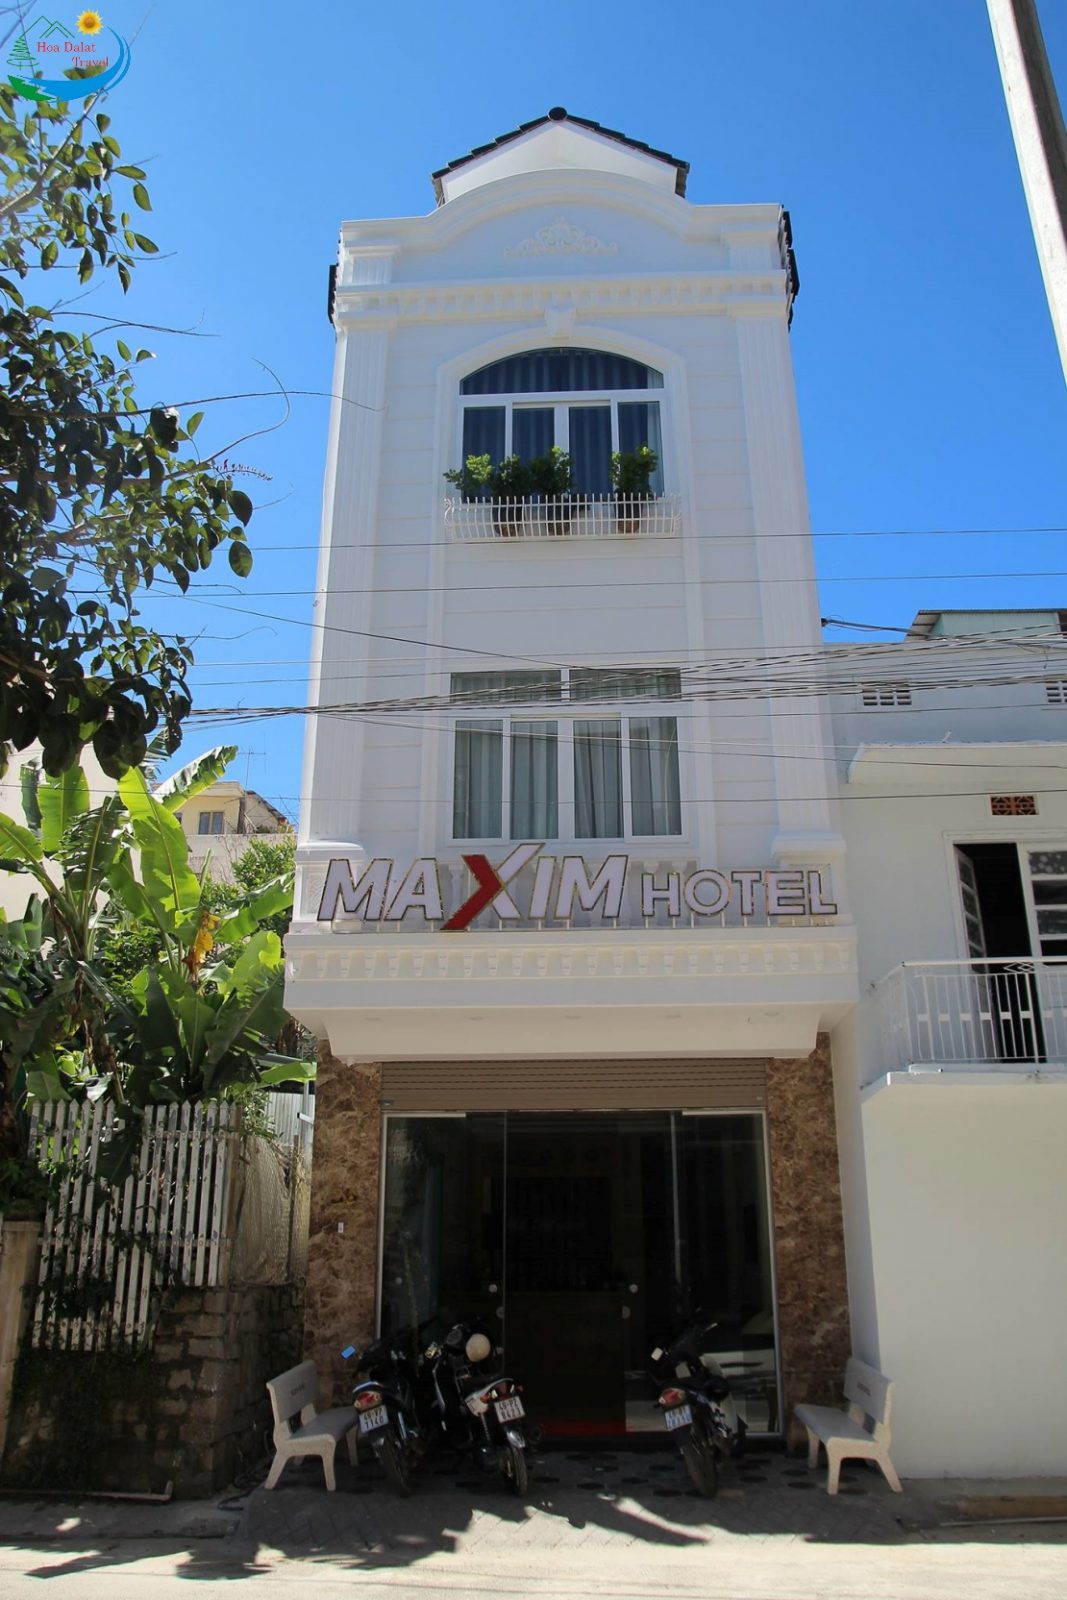 Maxim Hotel Dalat